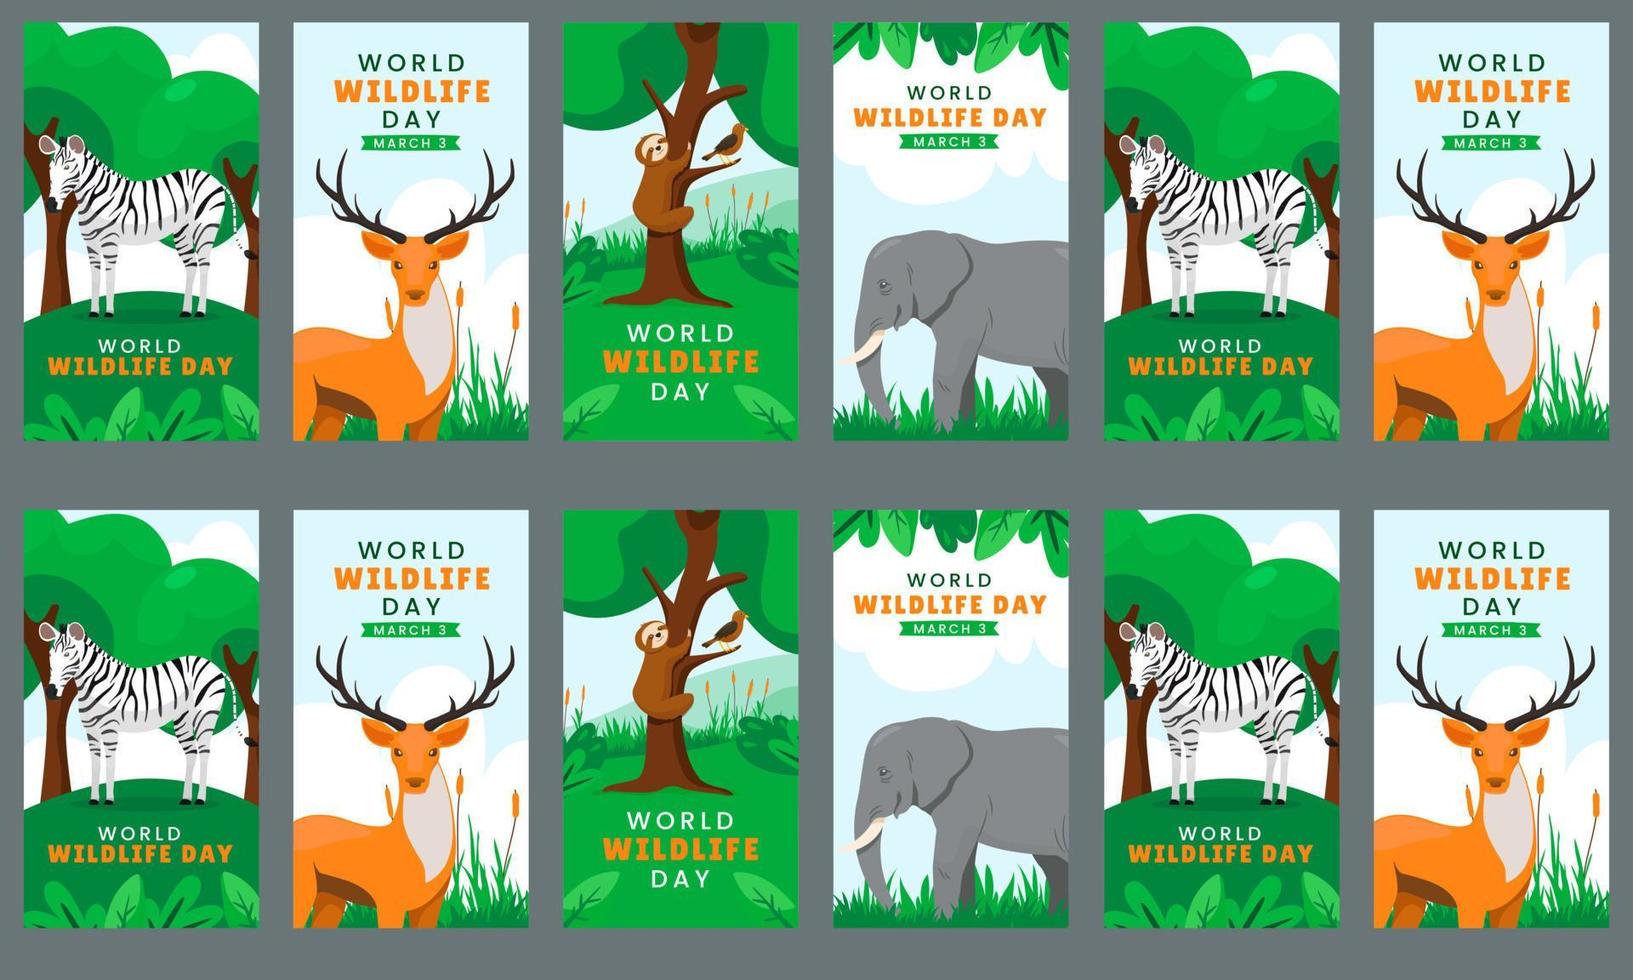 histórias de mídia social do dia mundial da vida selvagem vetor design plano